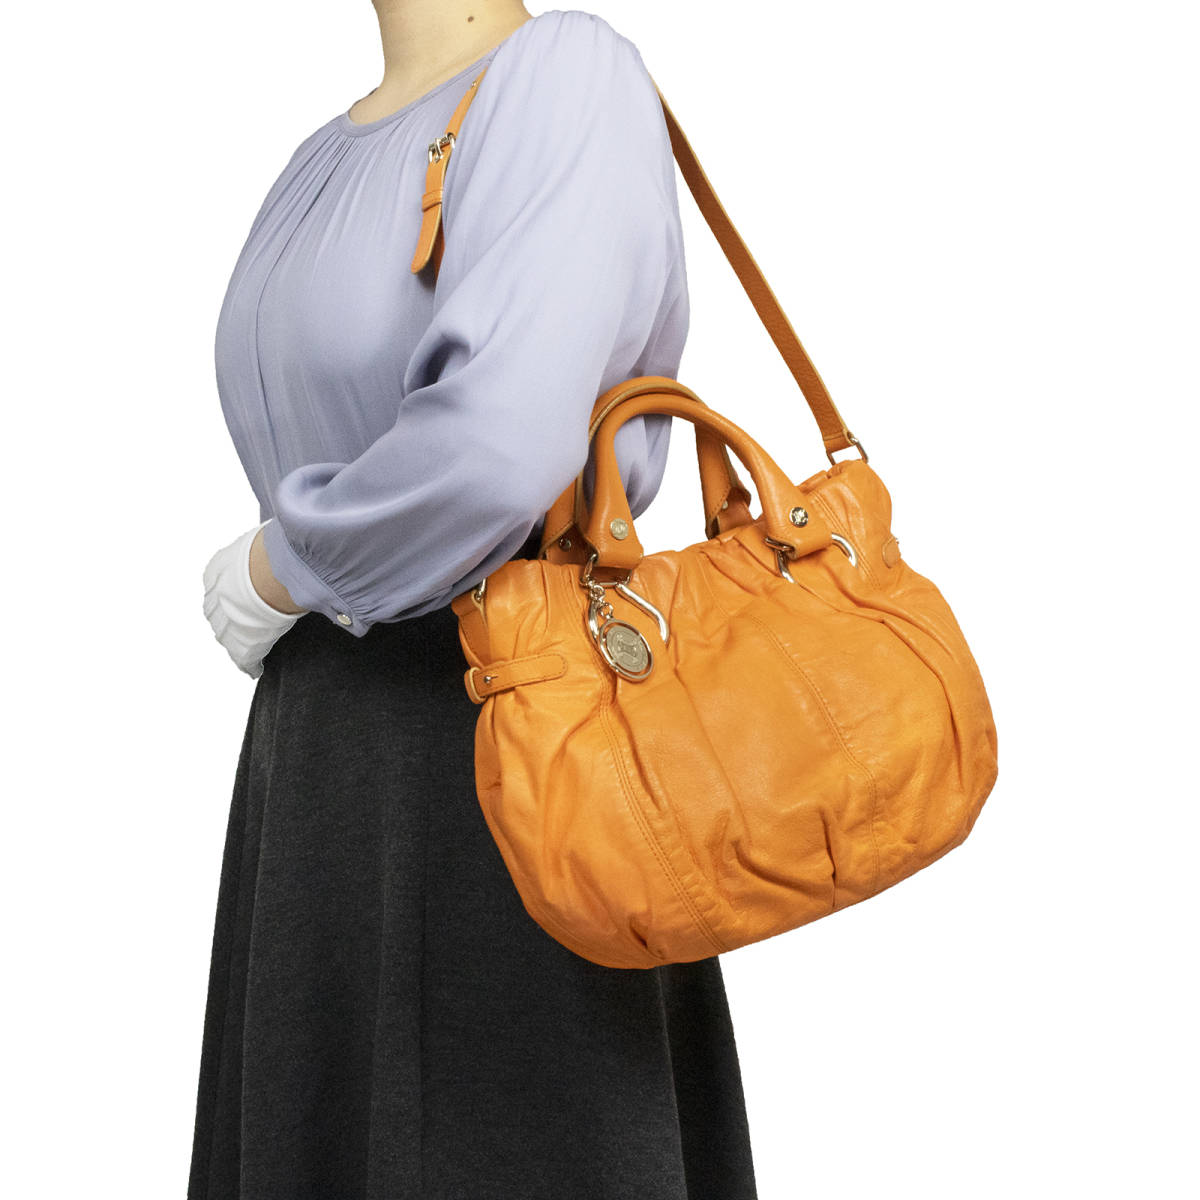 【全額返金保証・送料無料・良品】セリーヌの2wayハンドバッグ・肩掛け可・正規品・ピロースモール・オレンジ色系・ブラゾンチャーム・鞄_画像2